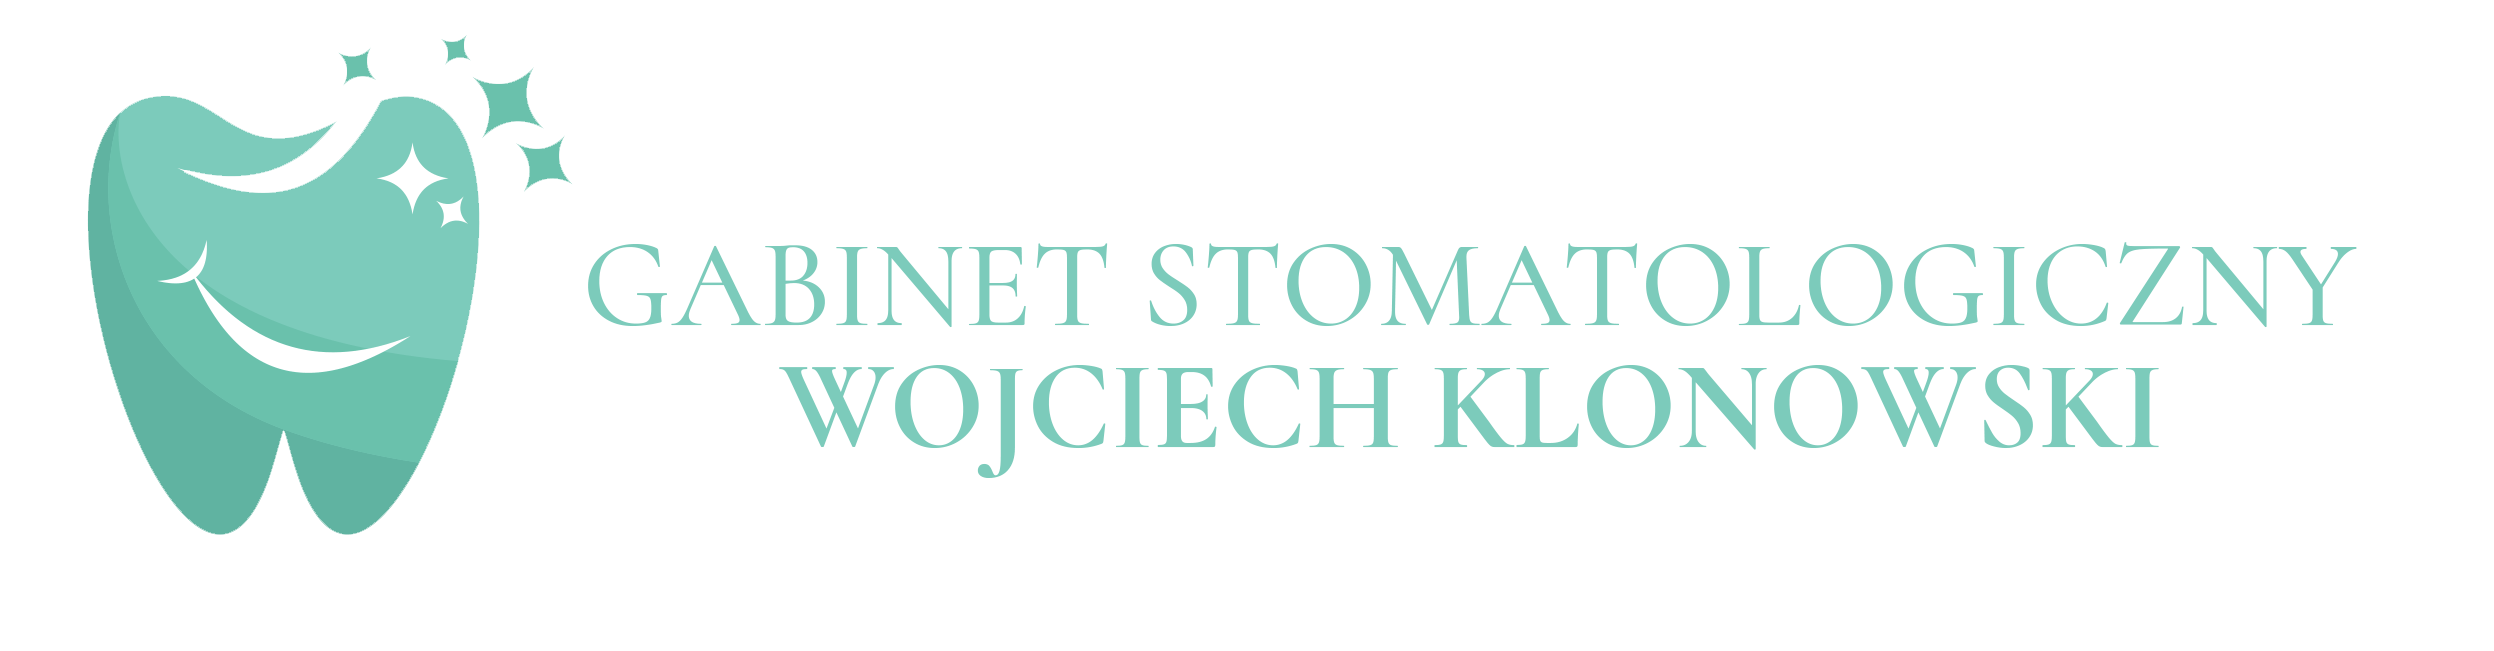 Gabinet Stomatologiczny Wojciech Klonowski